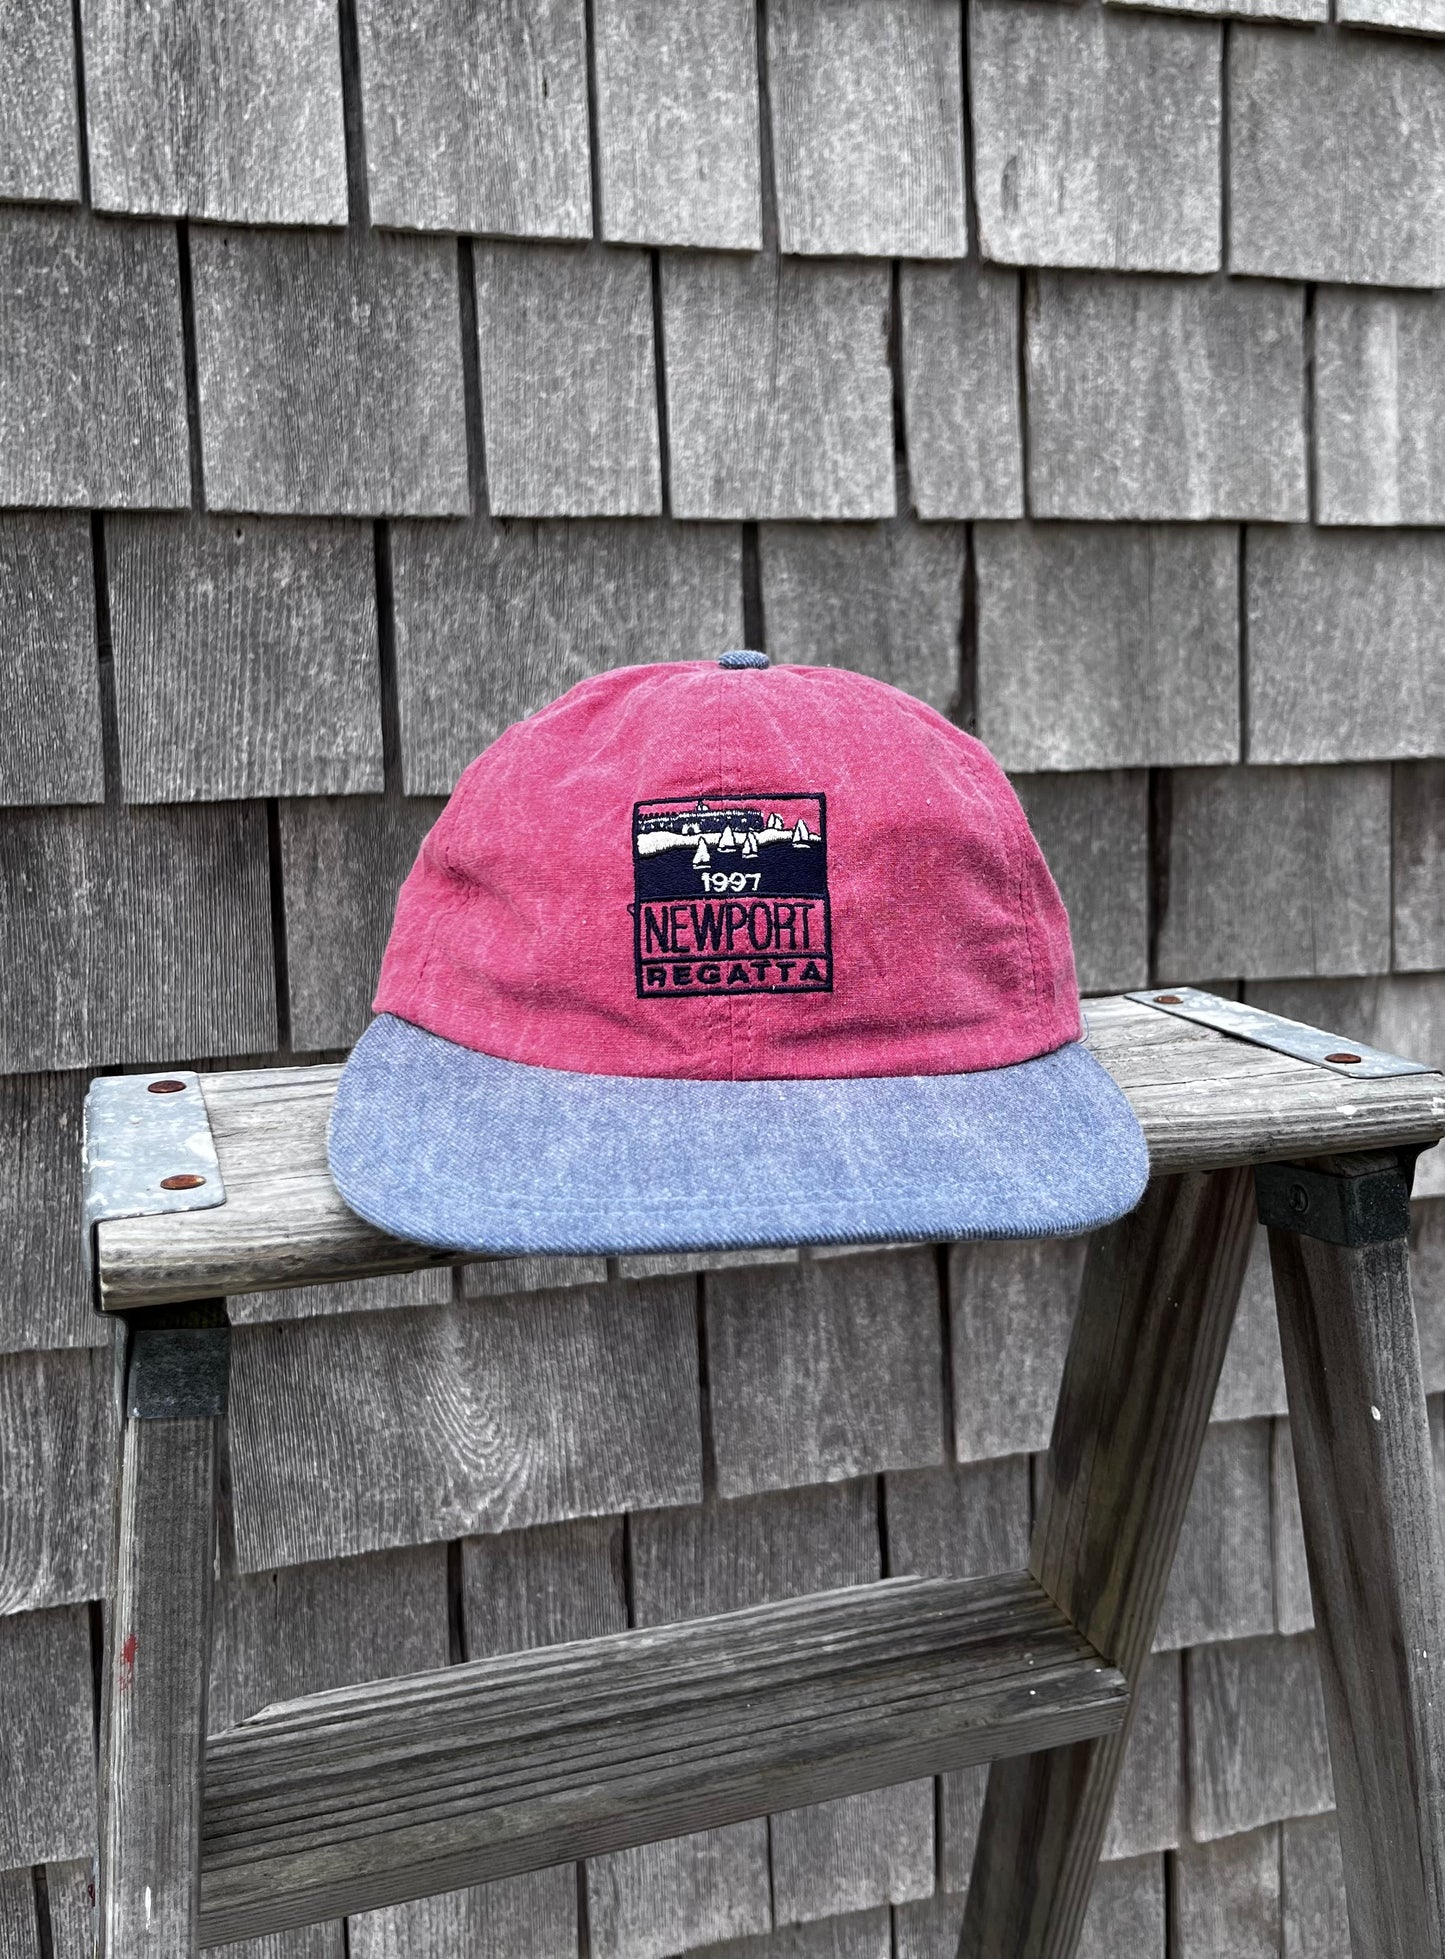 90s Newport Regatta New England Cap Strapback Hat